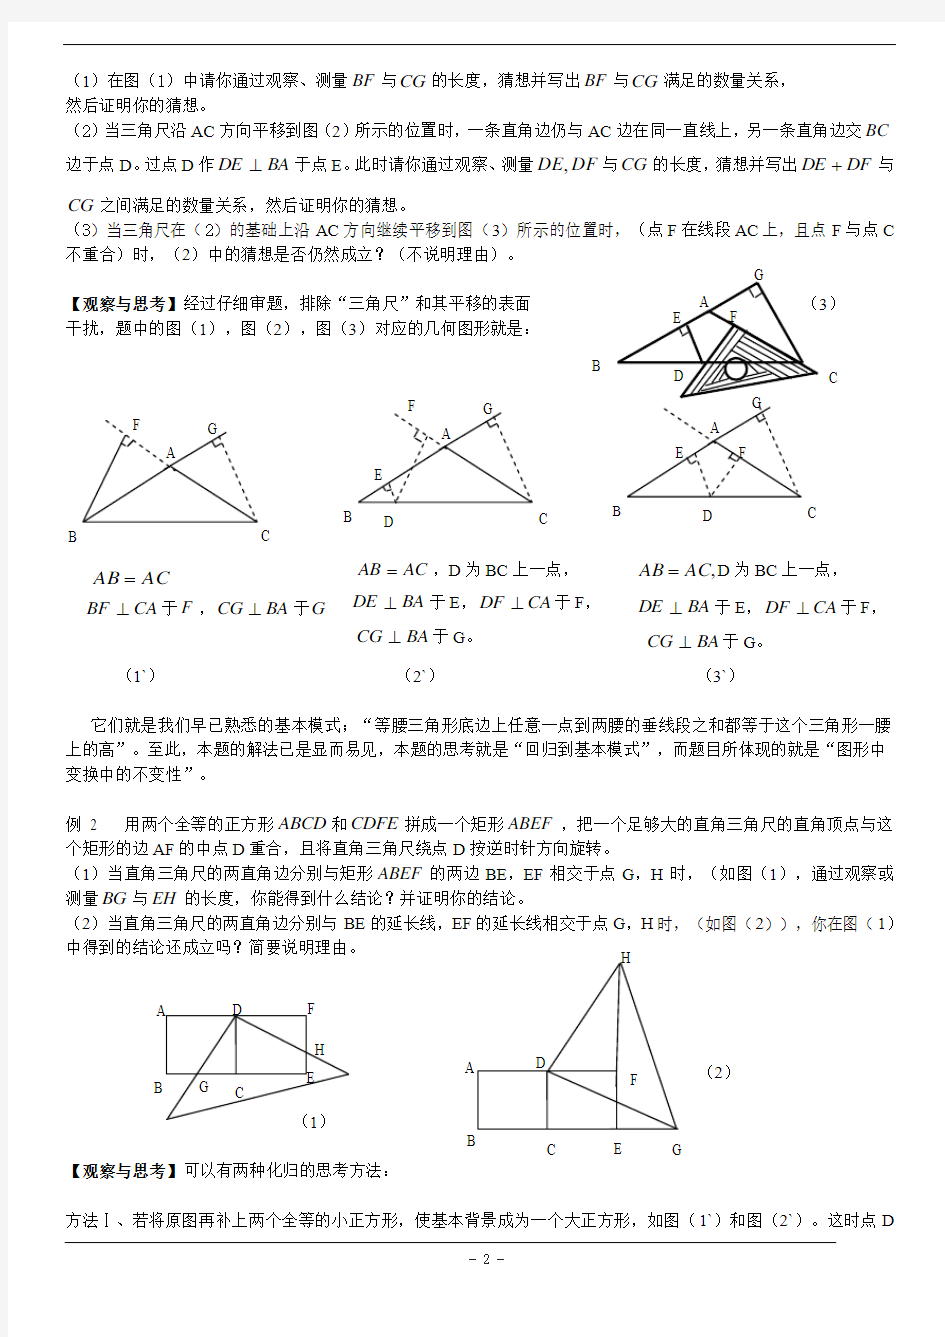 中考高分的十八个关节+关节12+几何图形的不变性